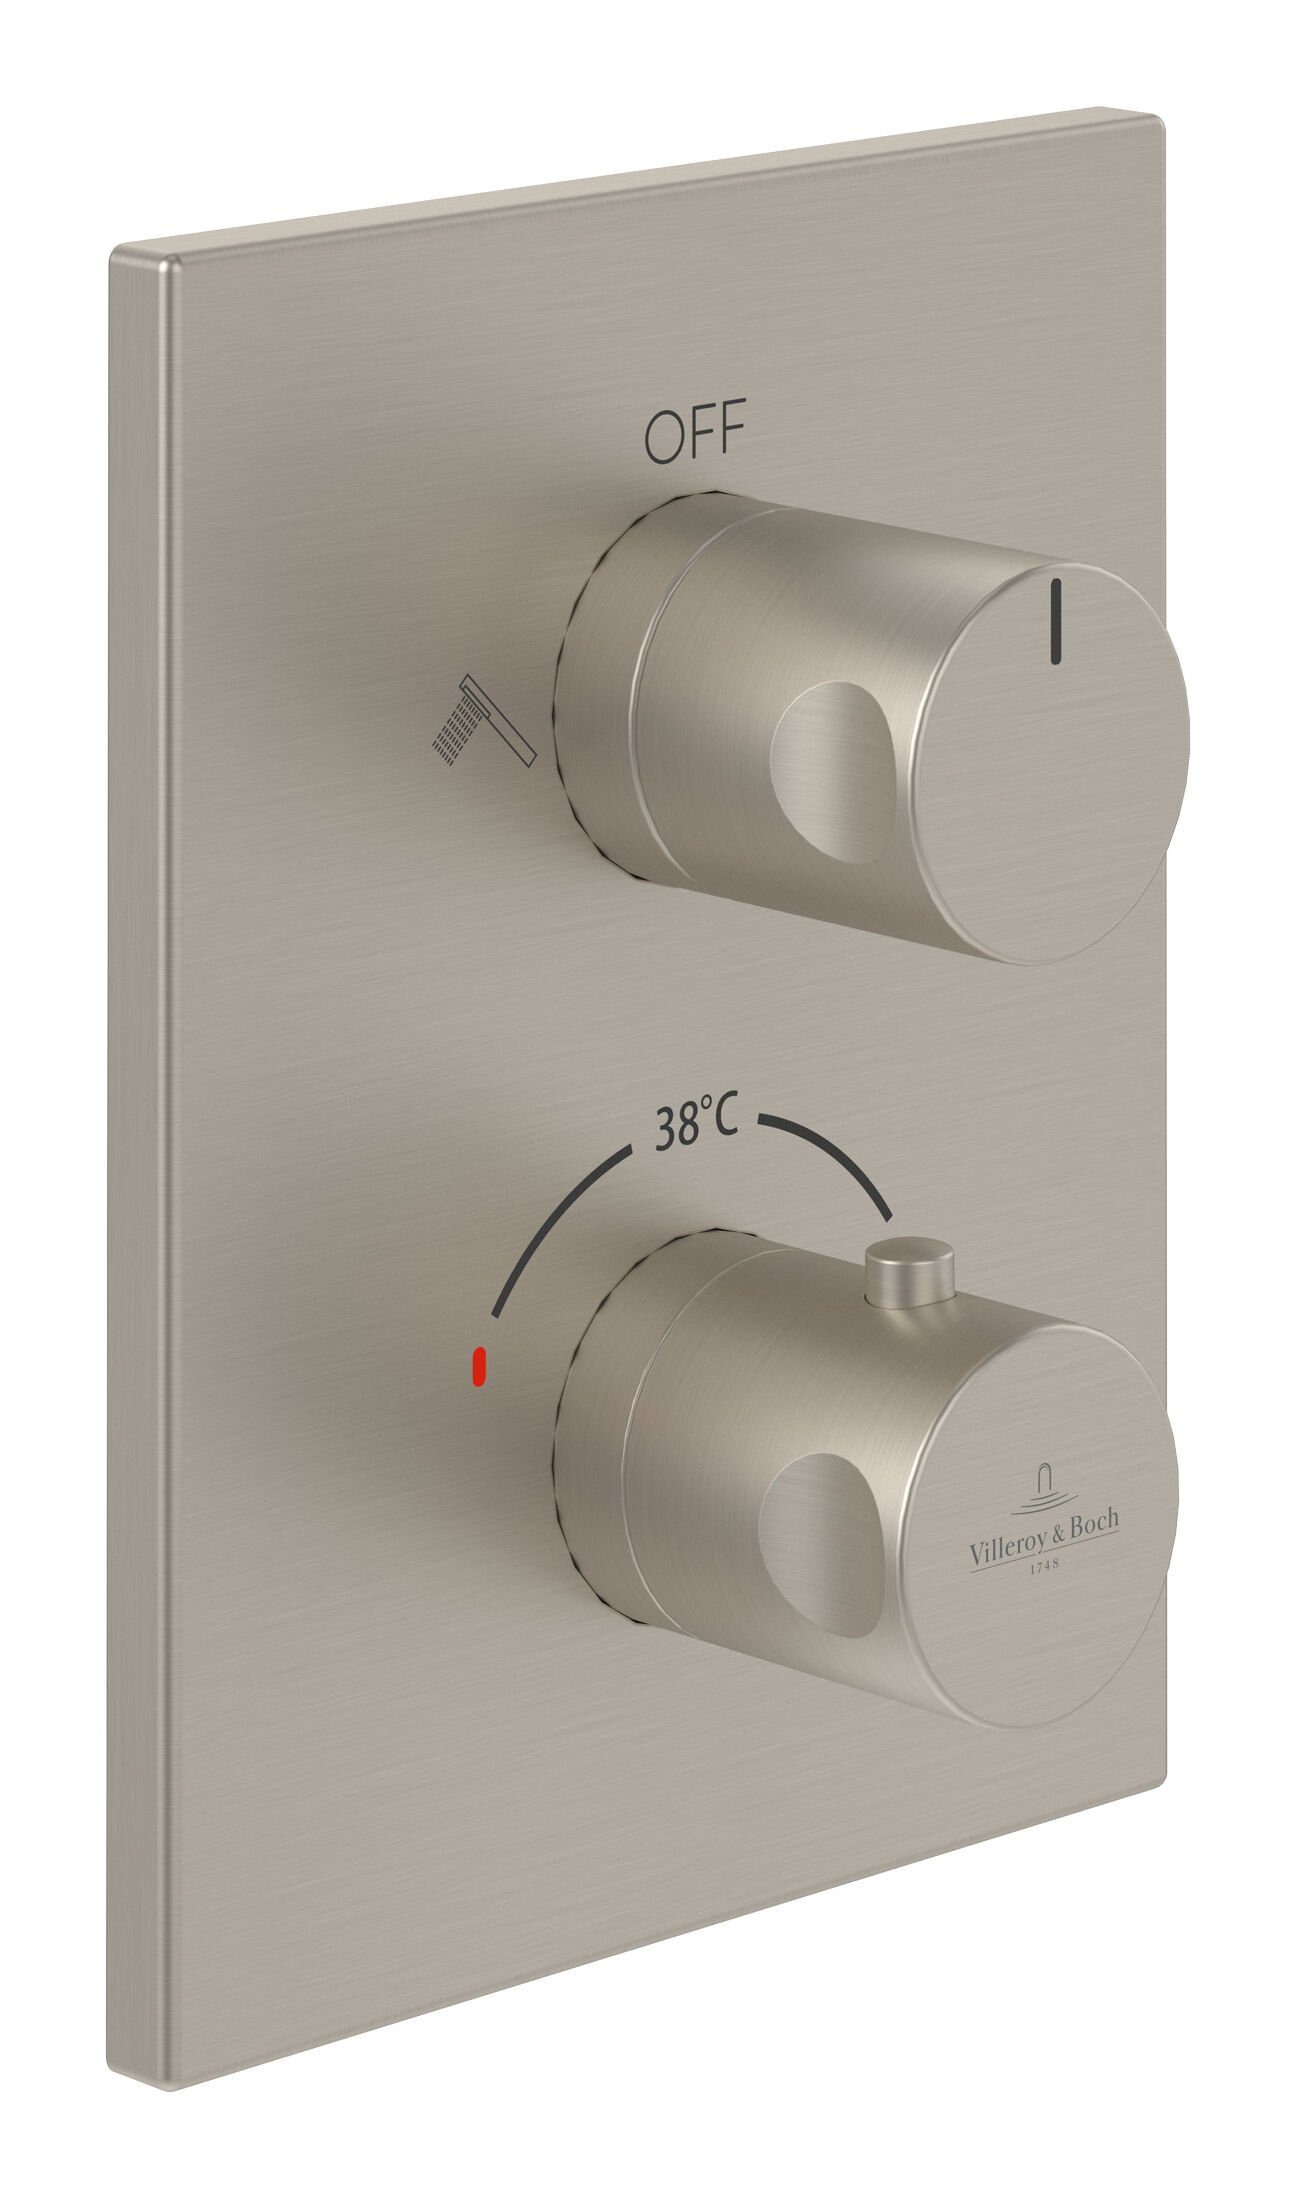 Villeroy & Boch Unterputzarmatur Universal Taps & Fittings Unterputz-Thermostat, Eckig, mit Umsteller - Brushed Nickel Matt | Wannenarmaturen